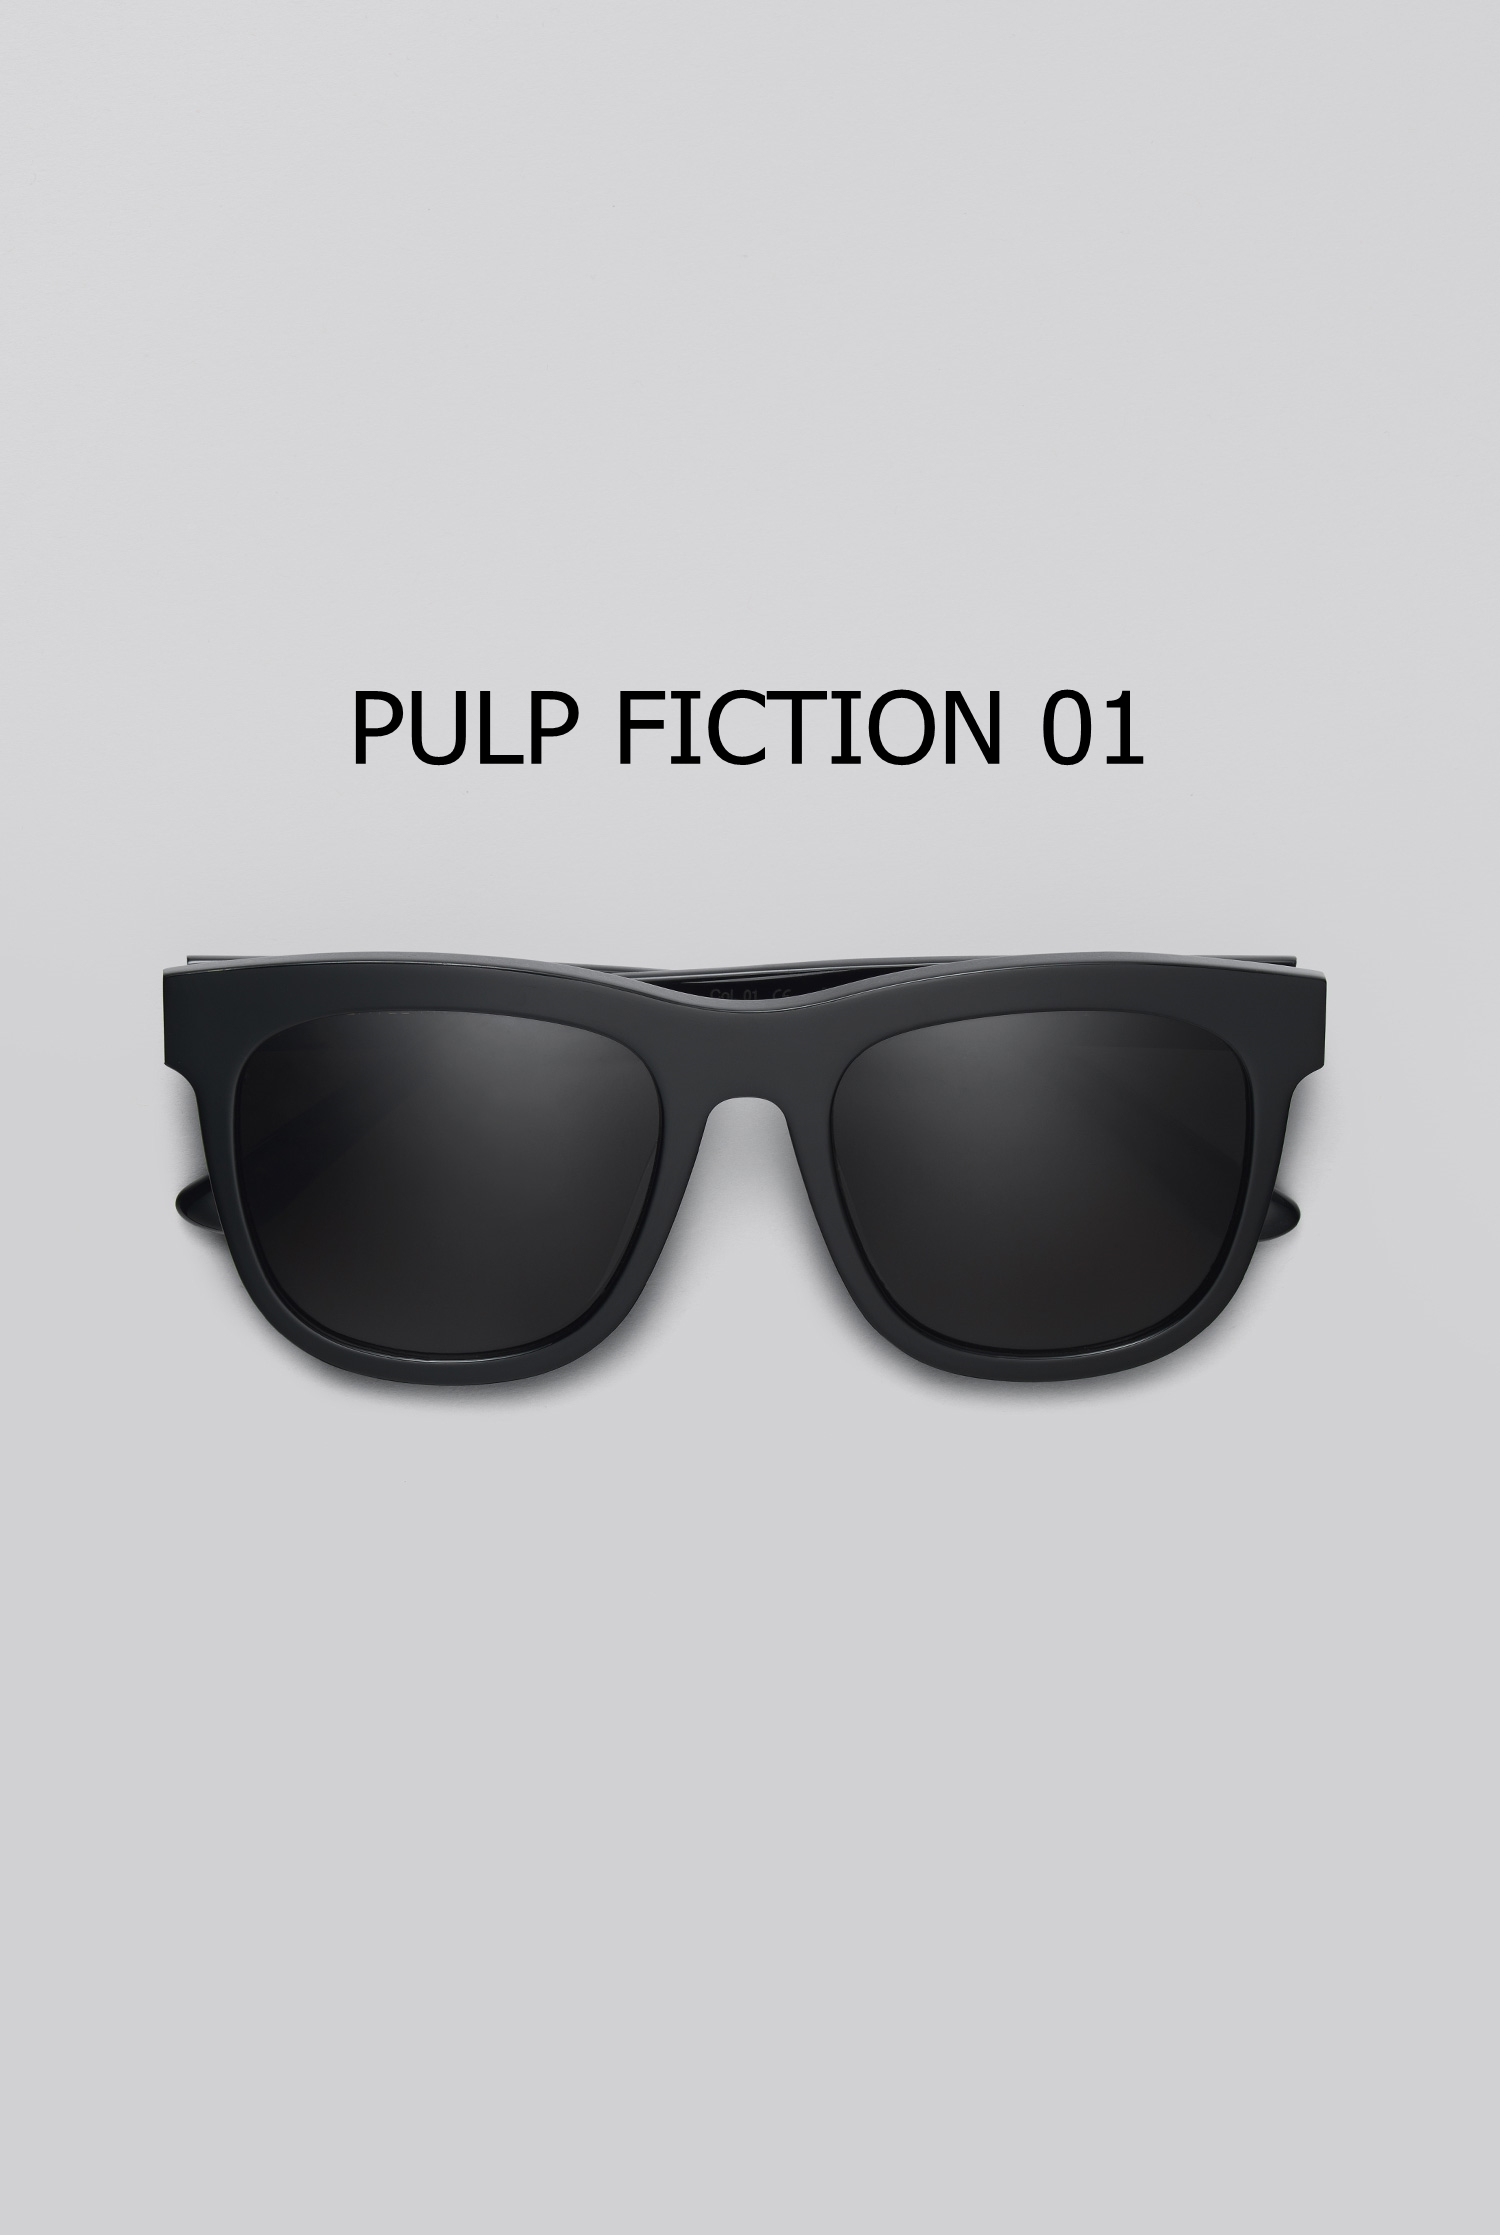 PULP FICTION 01